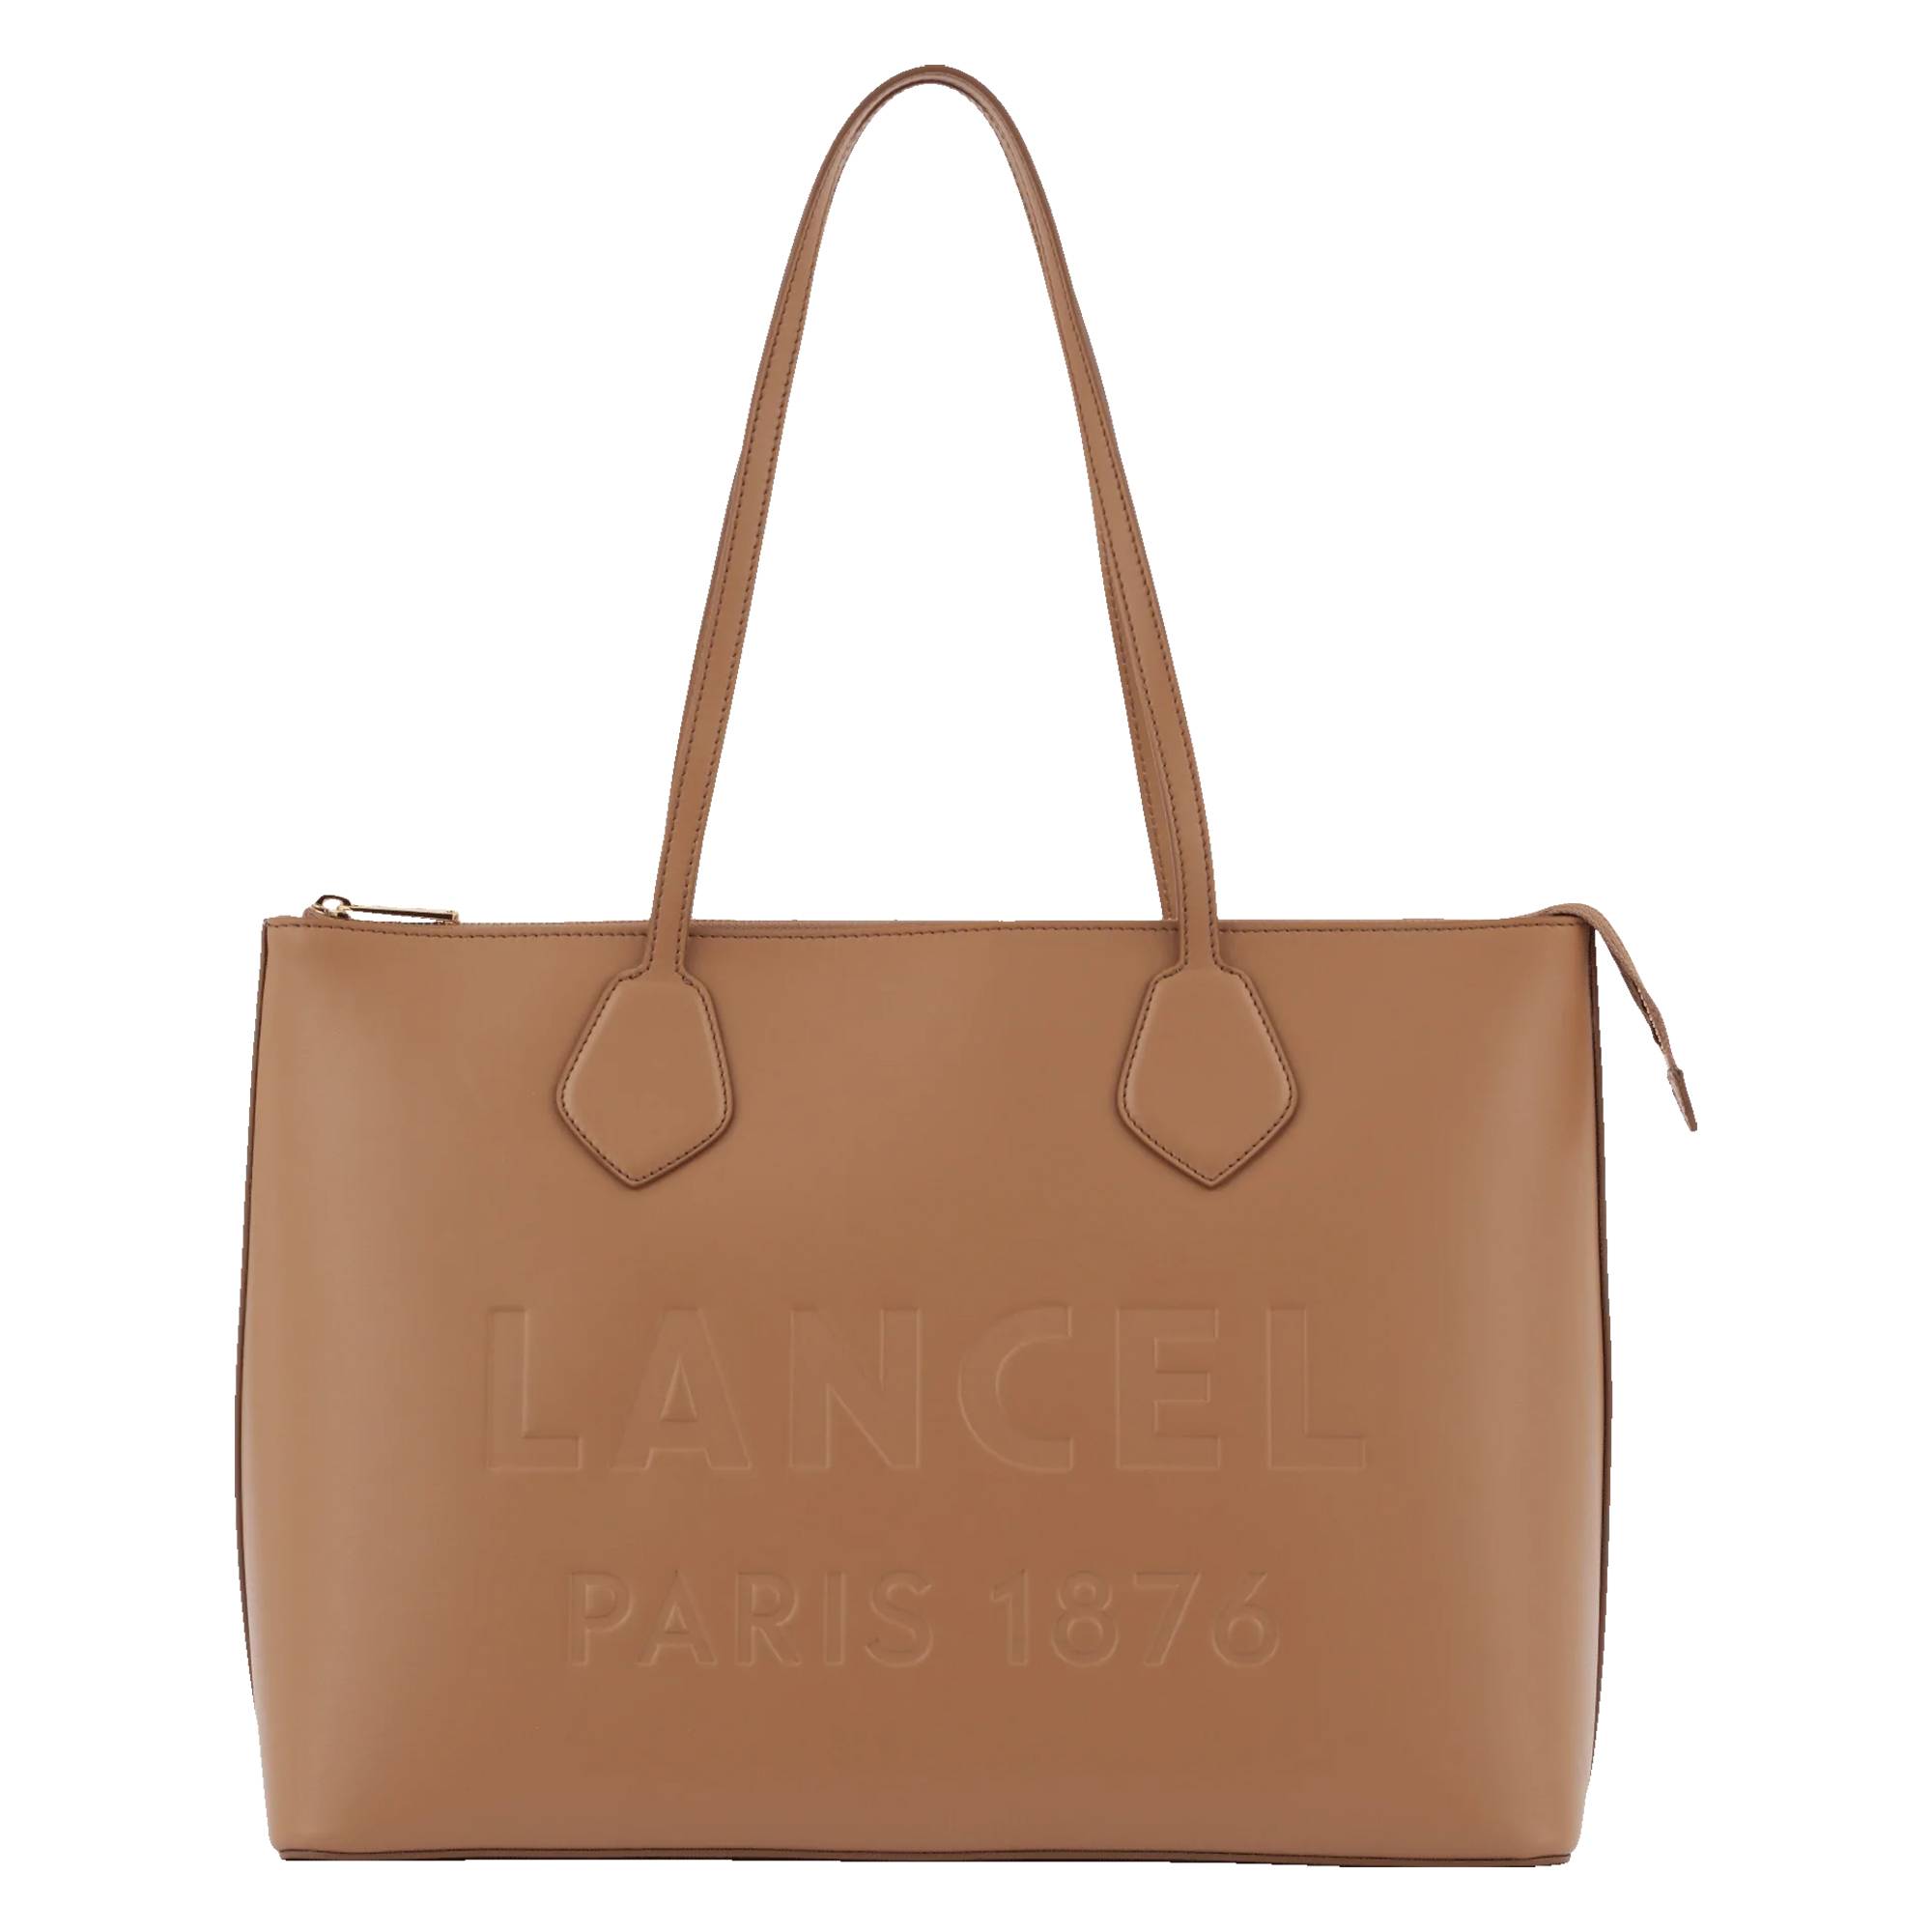 Grand sac cabas Lancel zippé Essential A12135 LH couleur granit vue de face